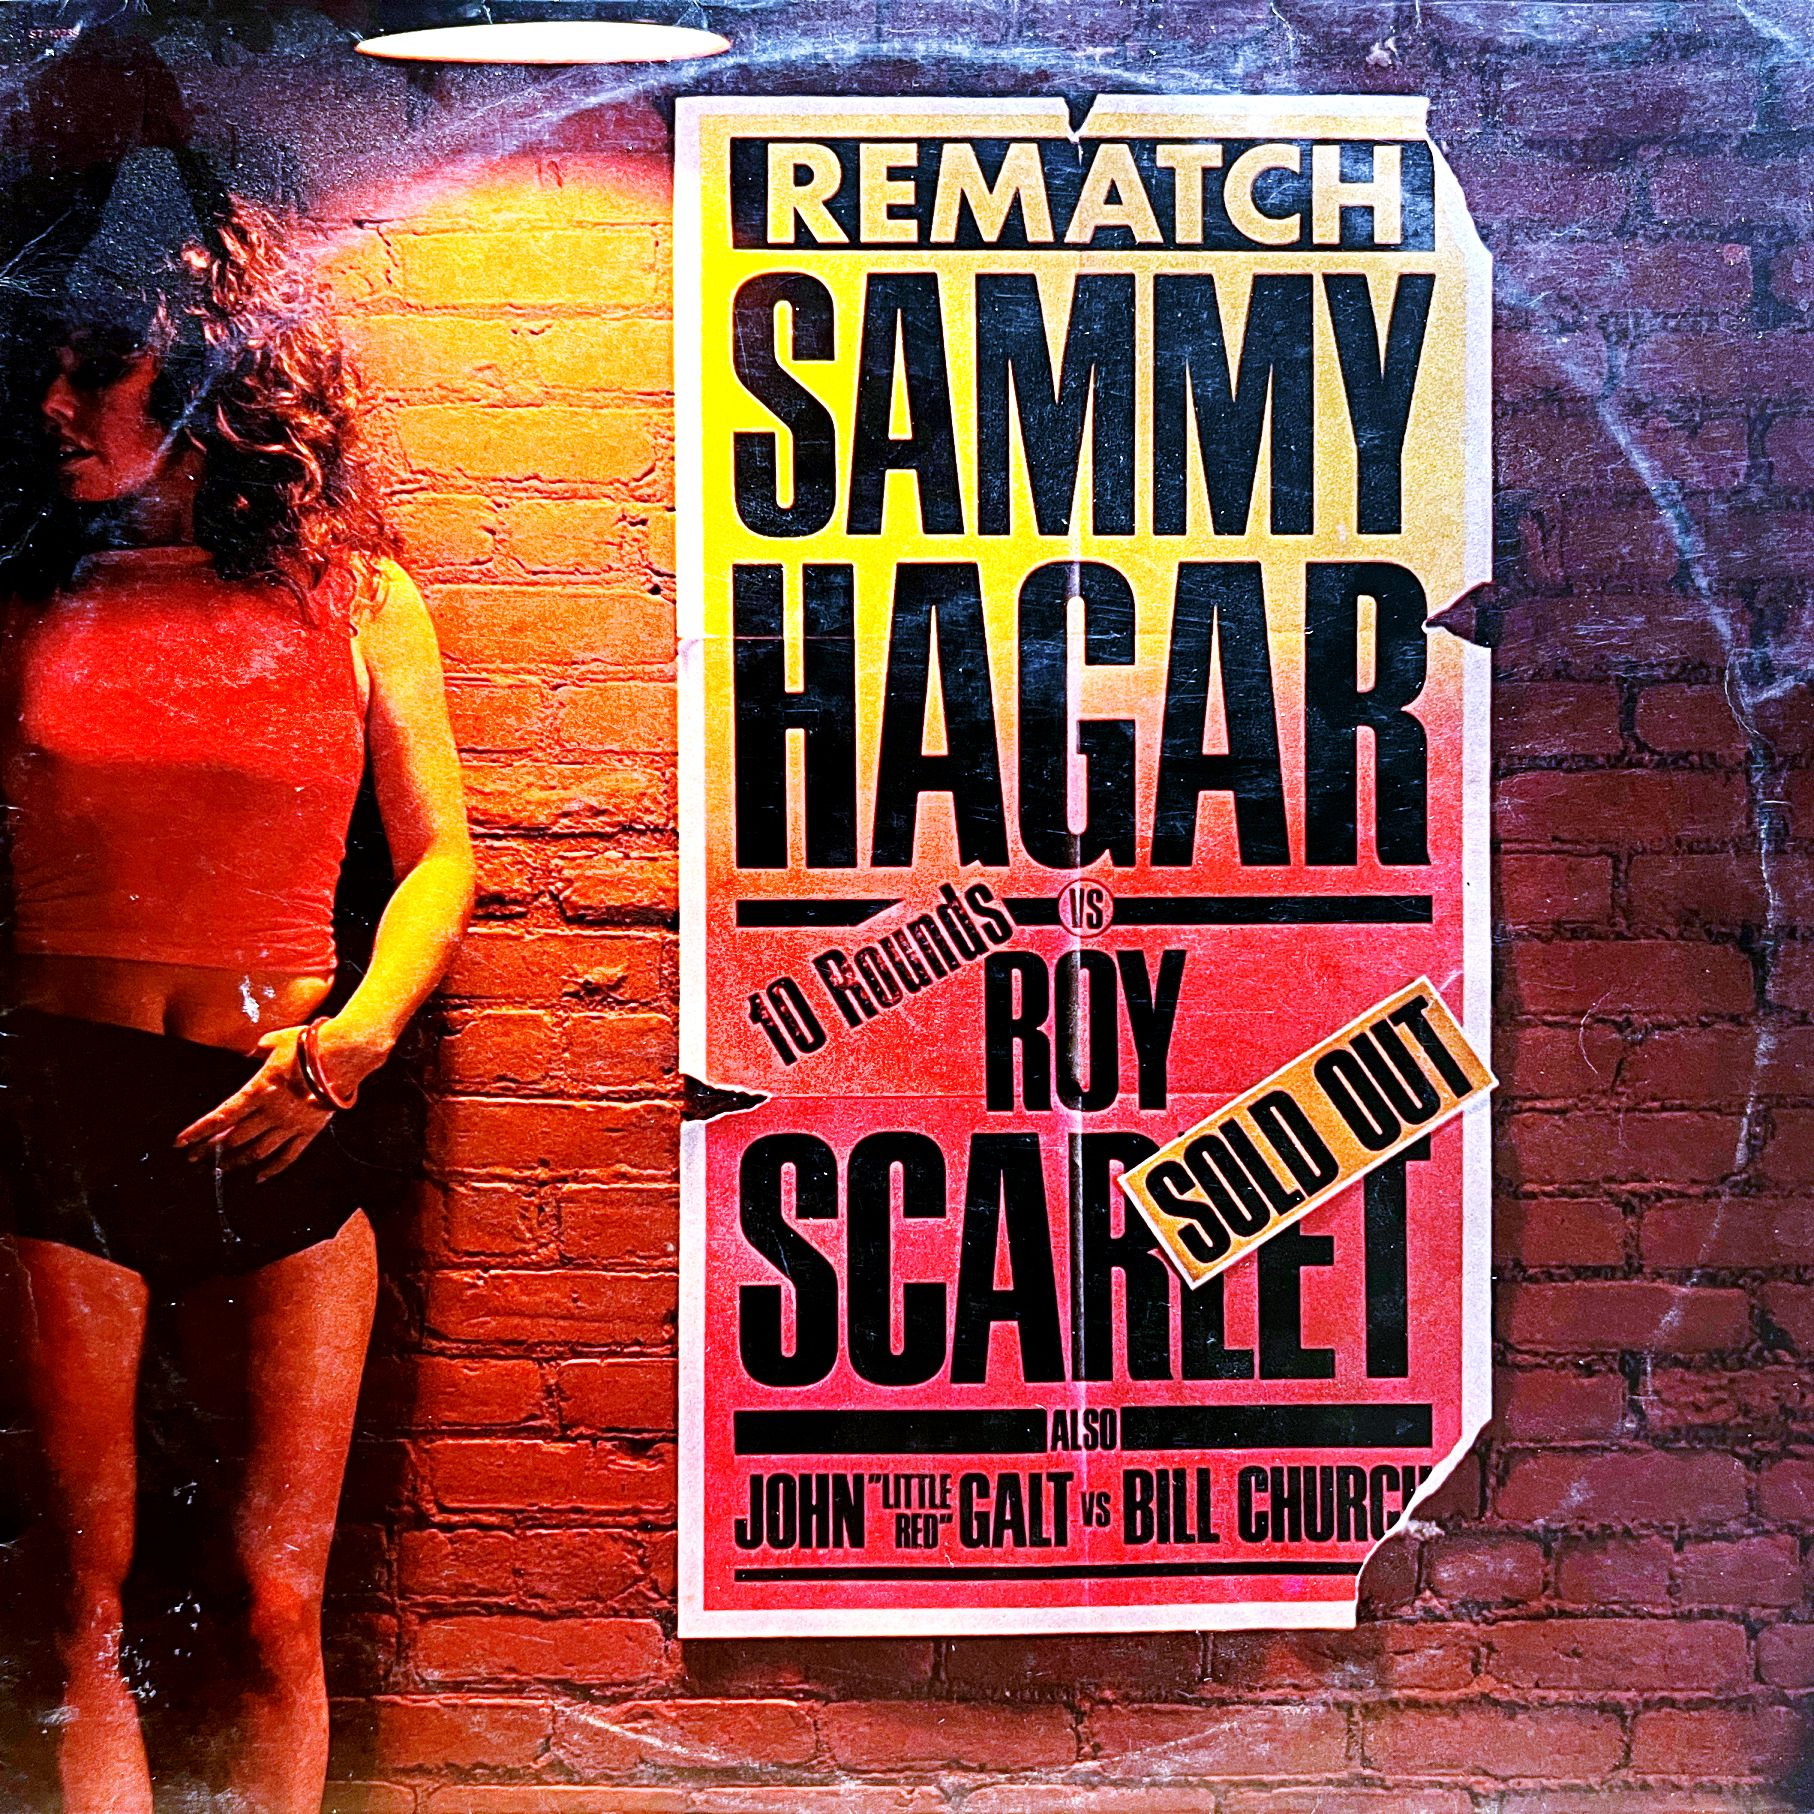 LP Sammy Hagar – Rematch